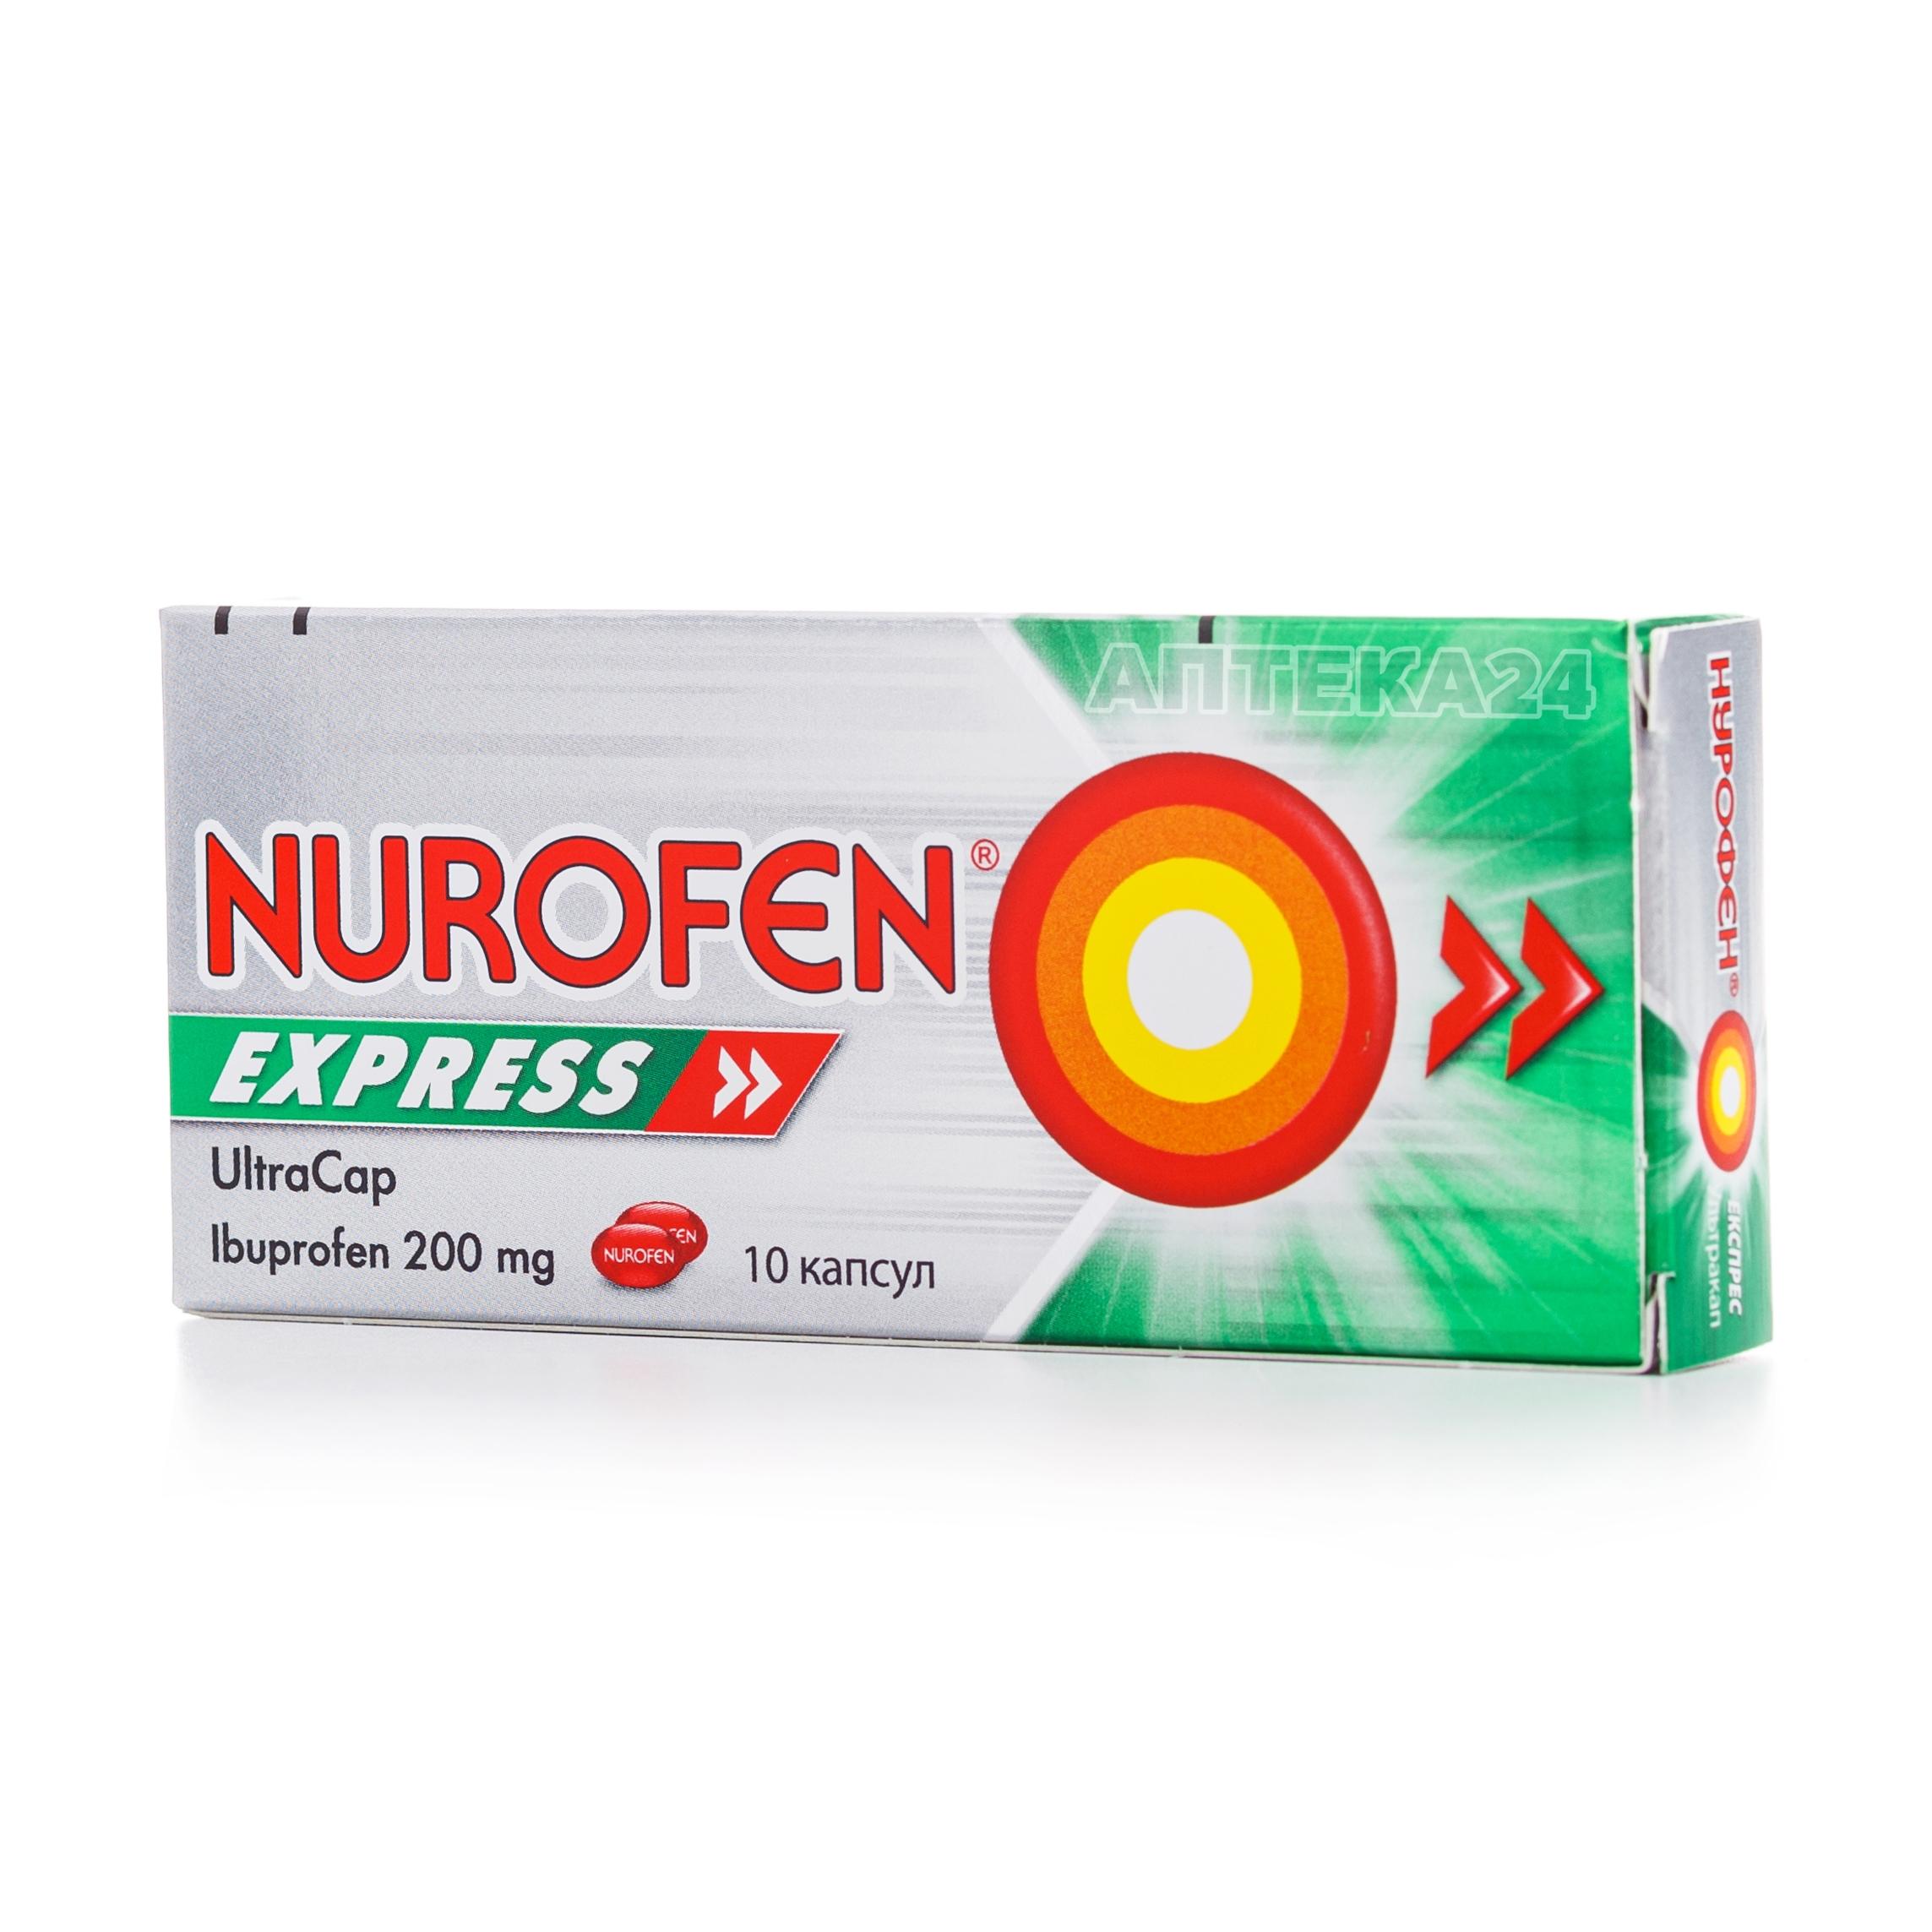 Нурофен Экспресс Ультракап капсулы 200 мг N10_6001bac705dc3.jpeg